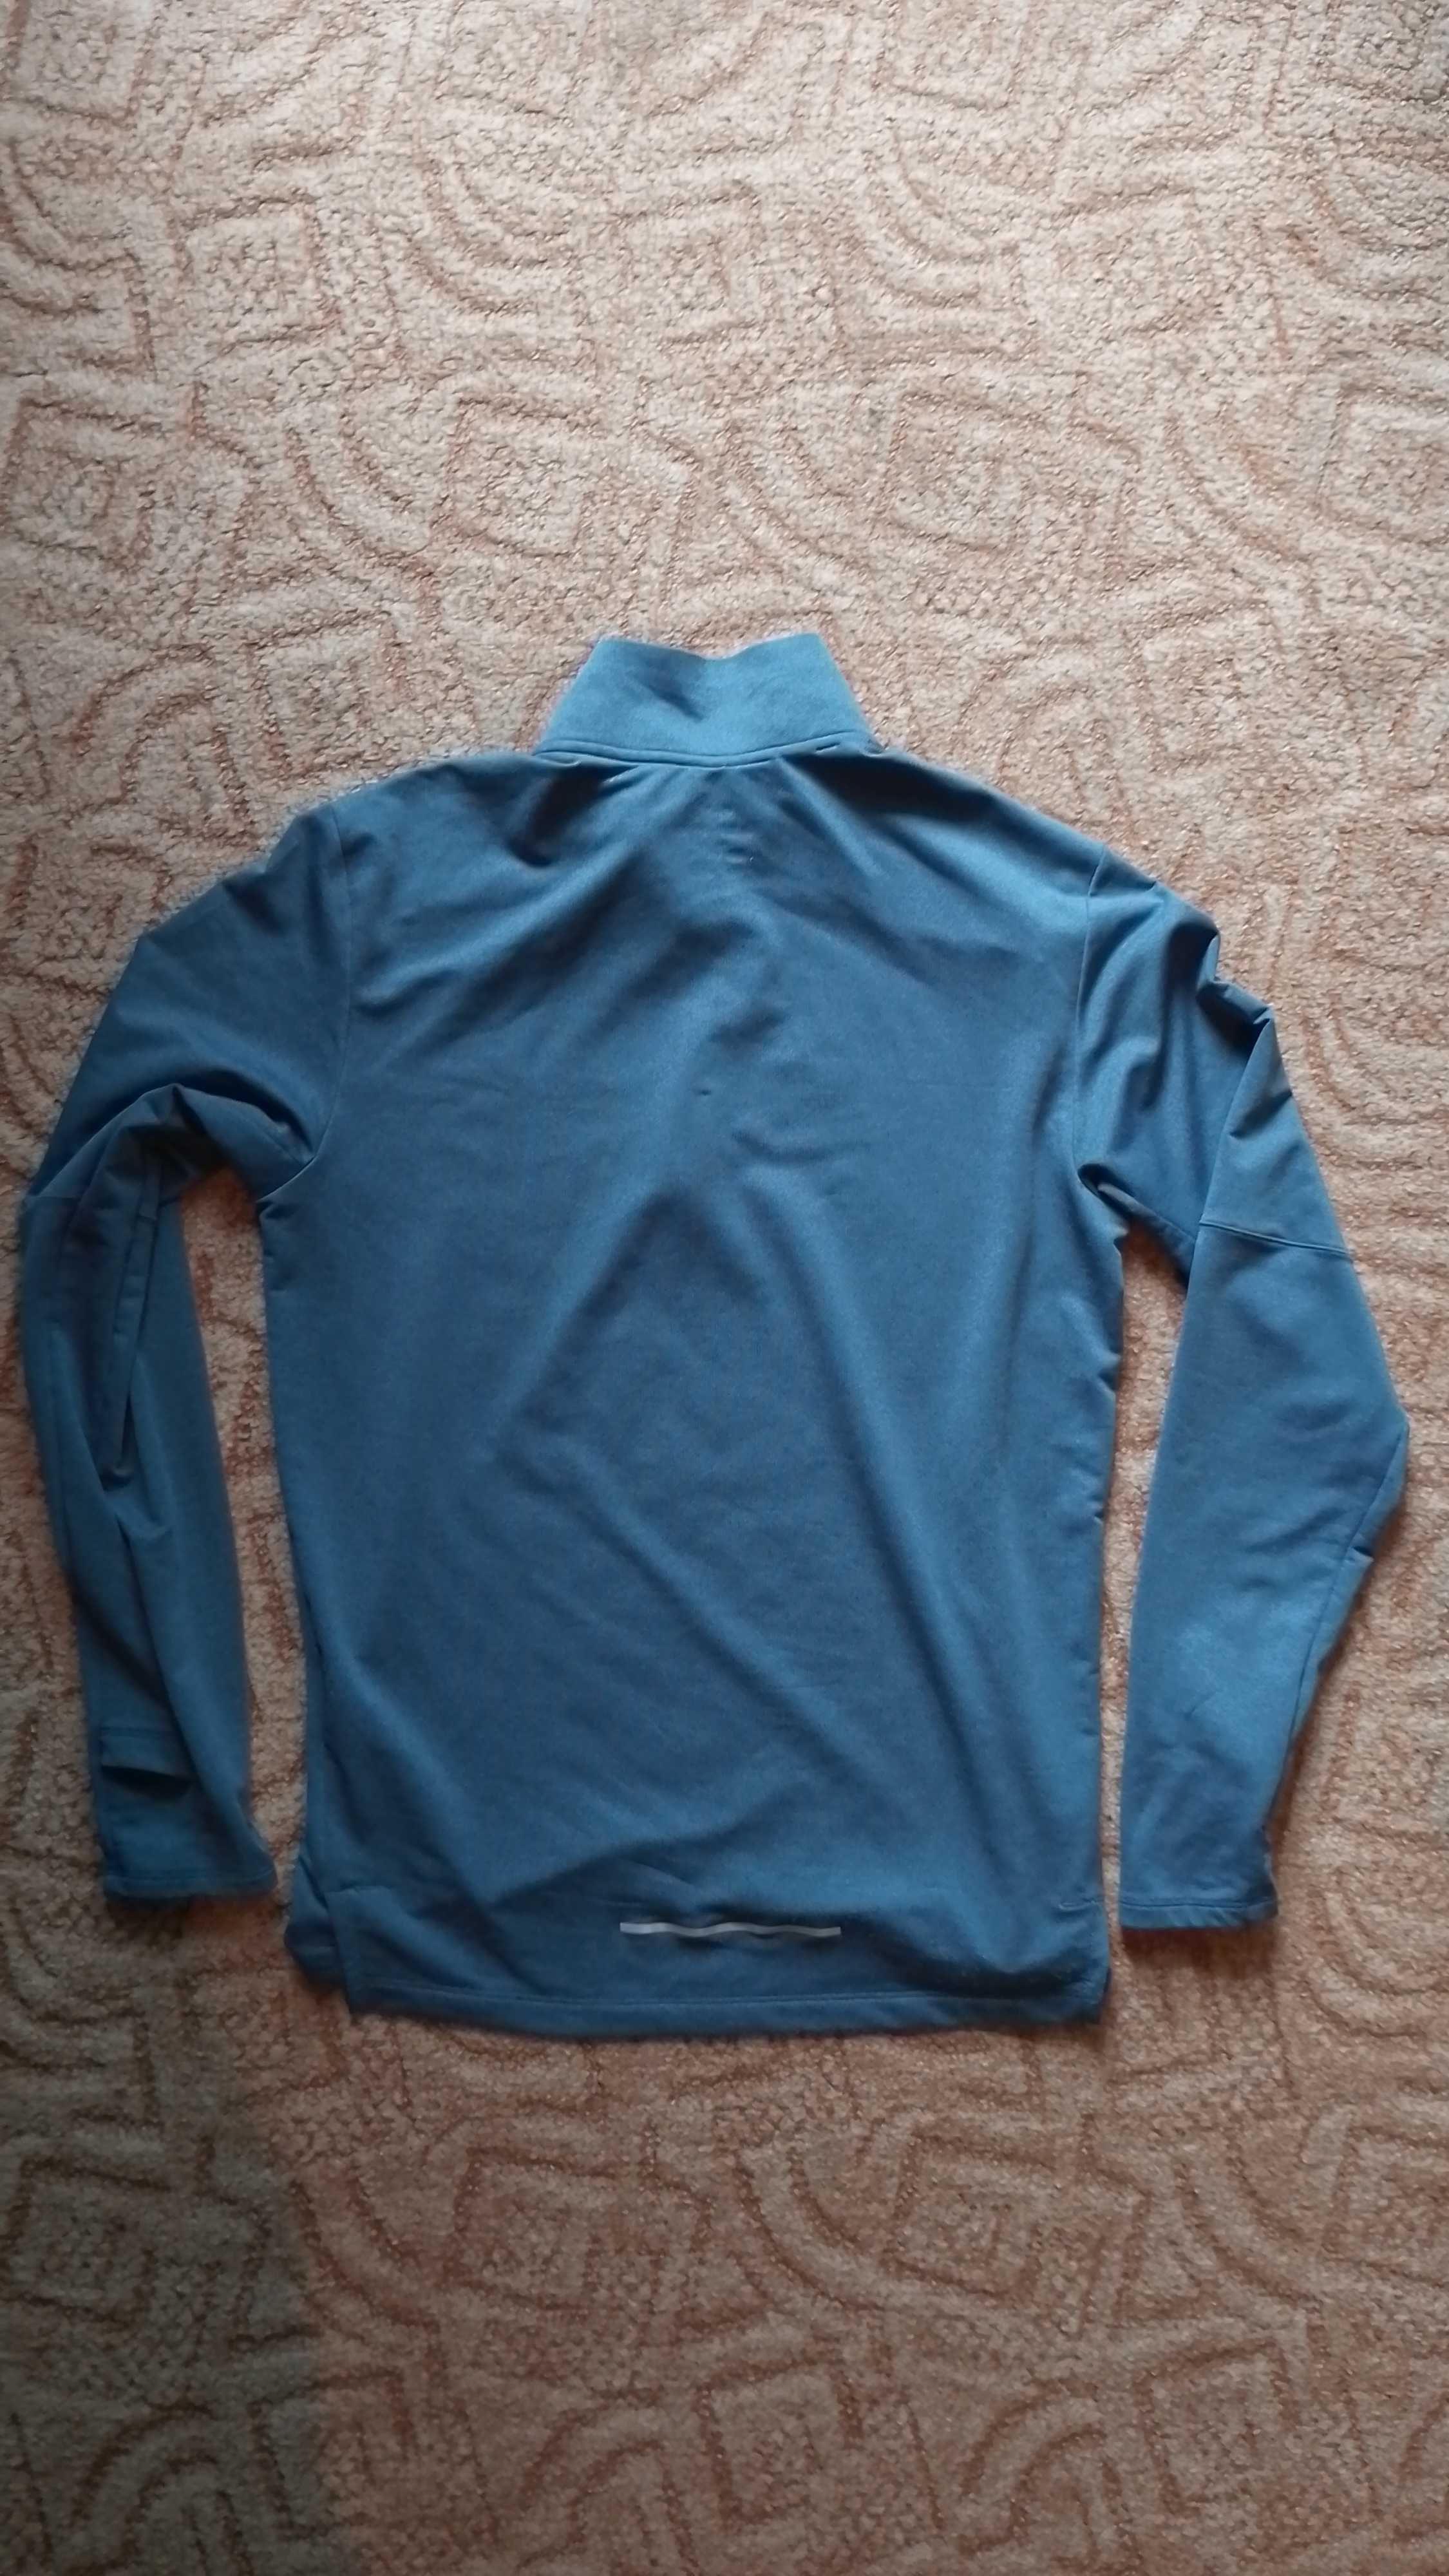 Bluza Nike Sportowa niebieska S trekking bieganie unisex